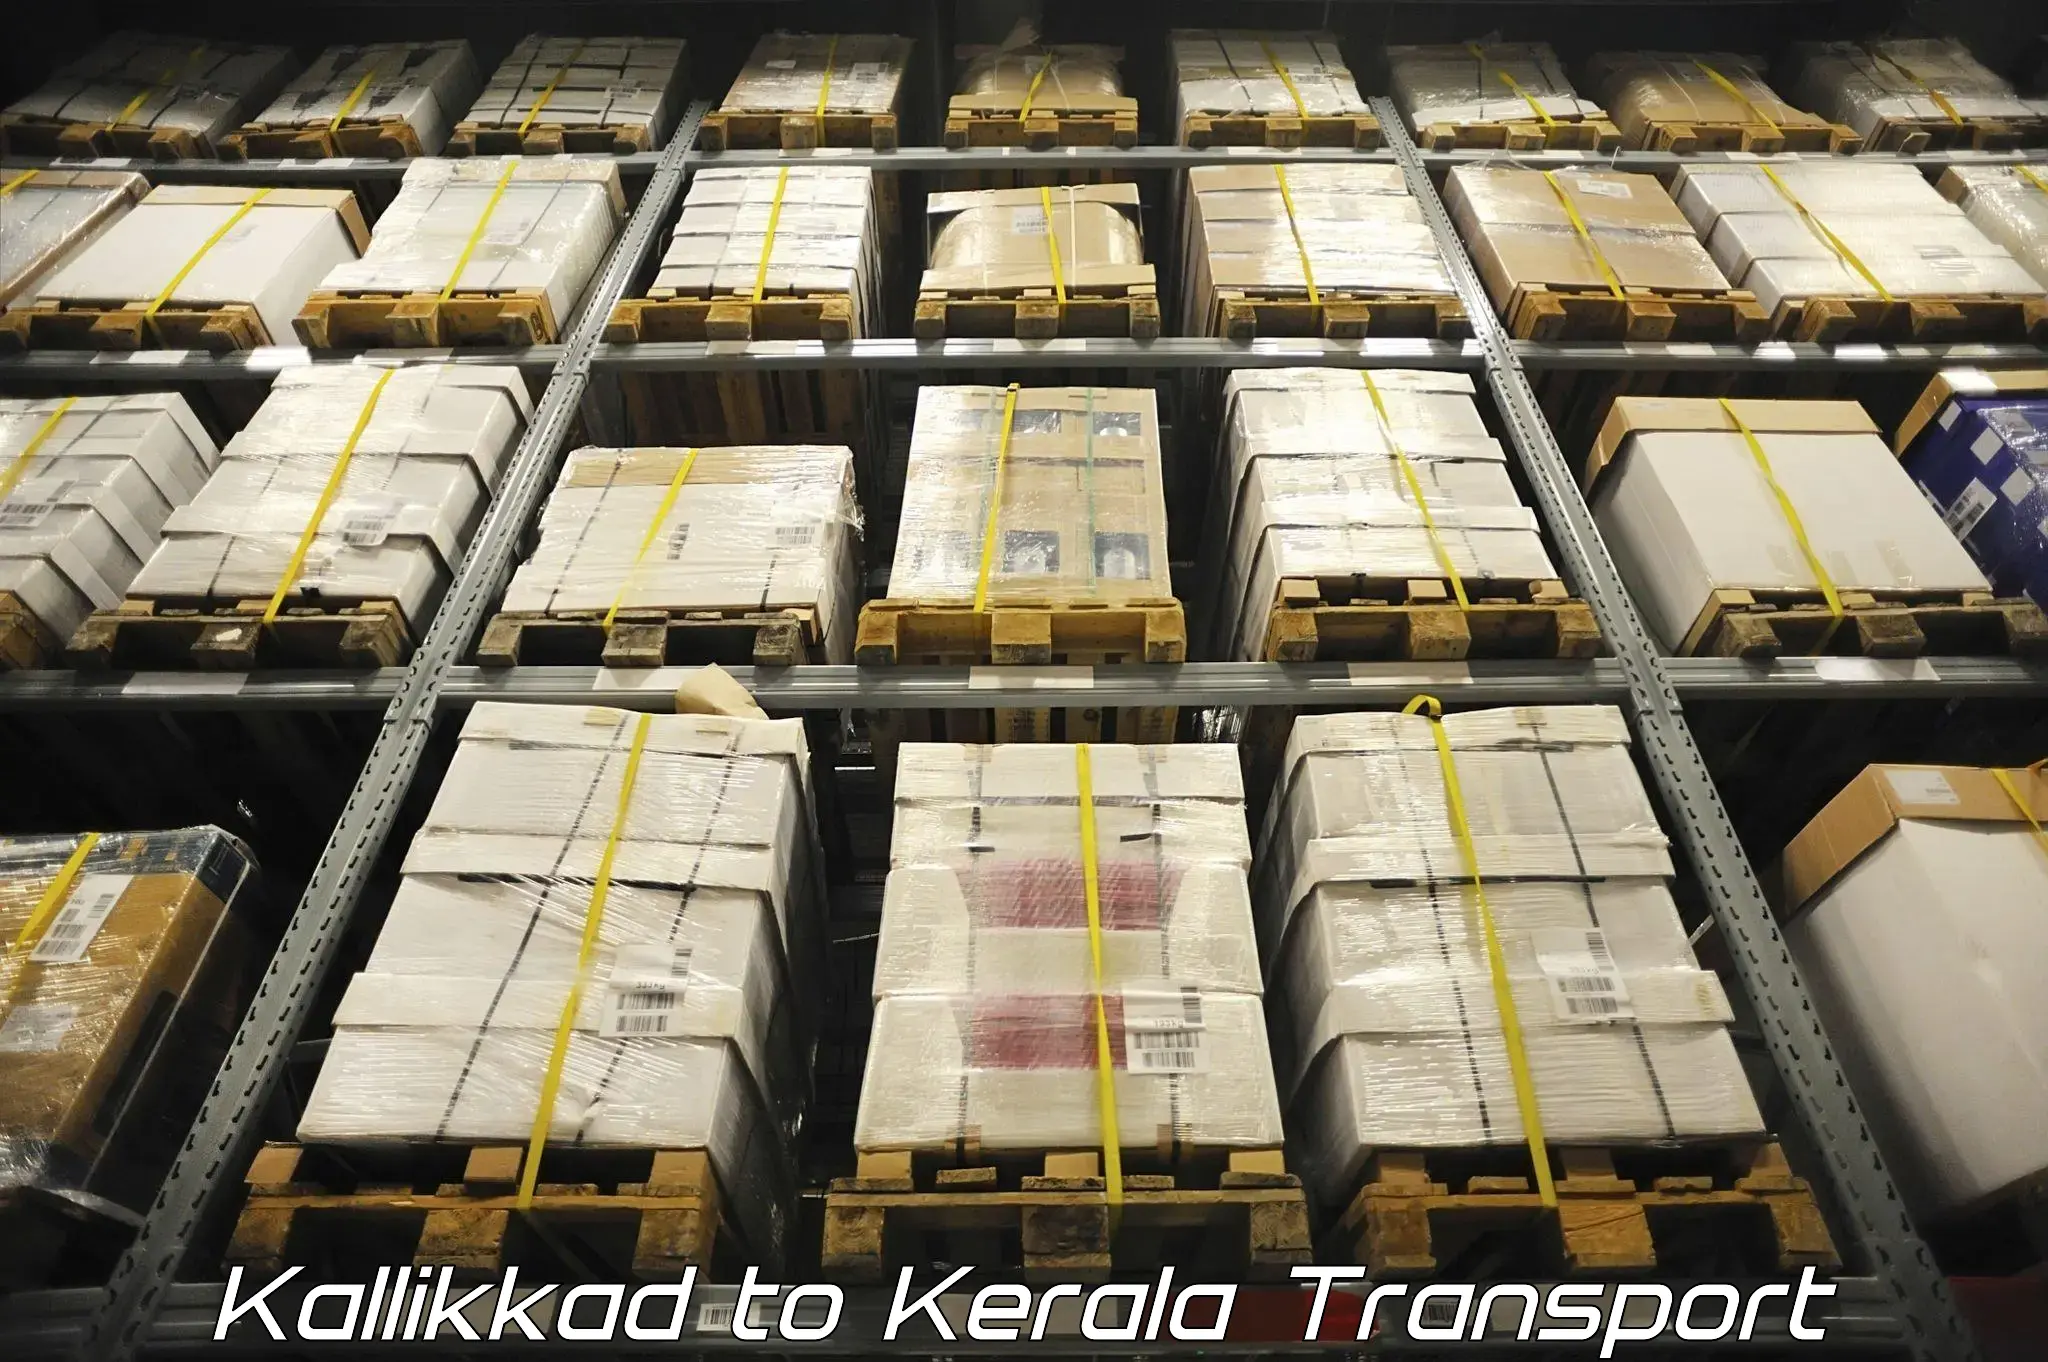 Cargo transportation services in Kallikkad to Chungathara